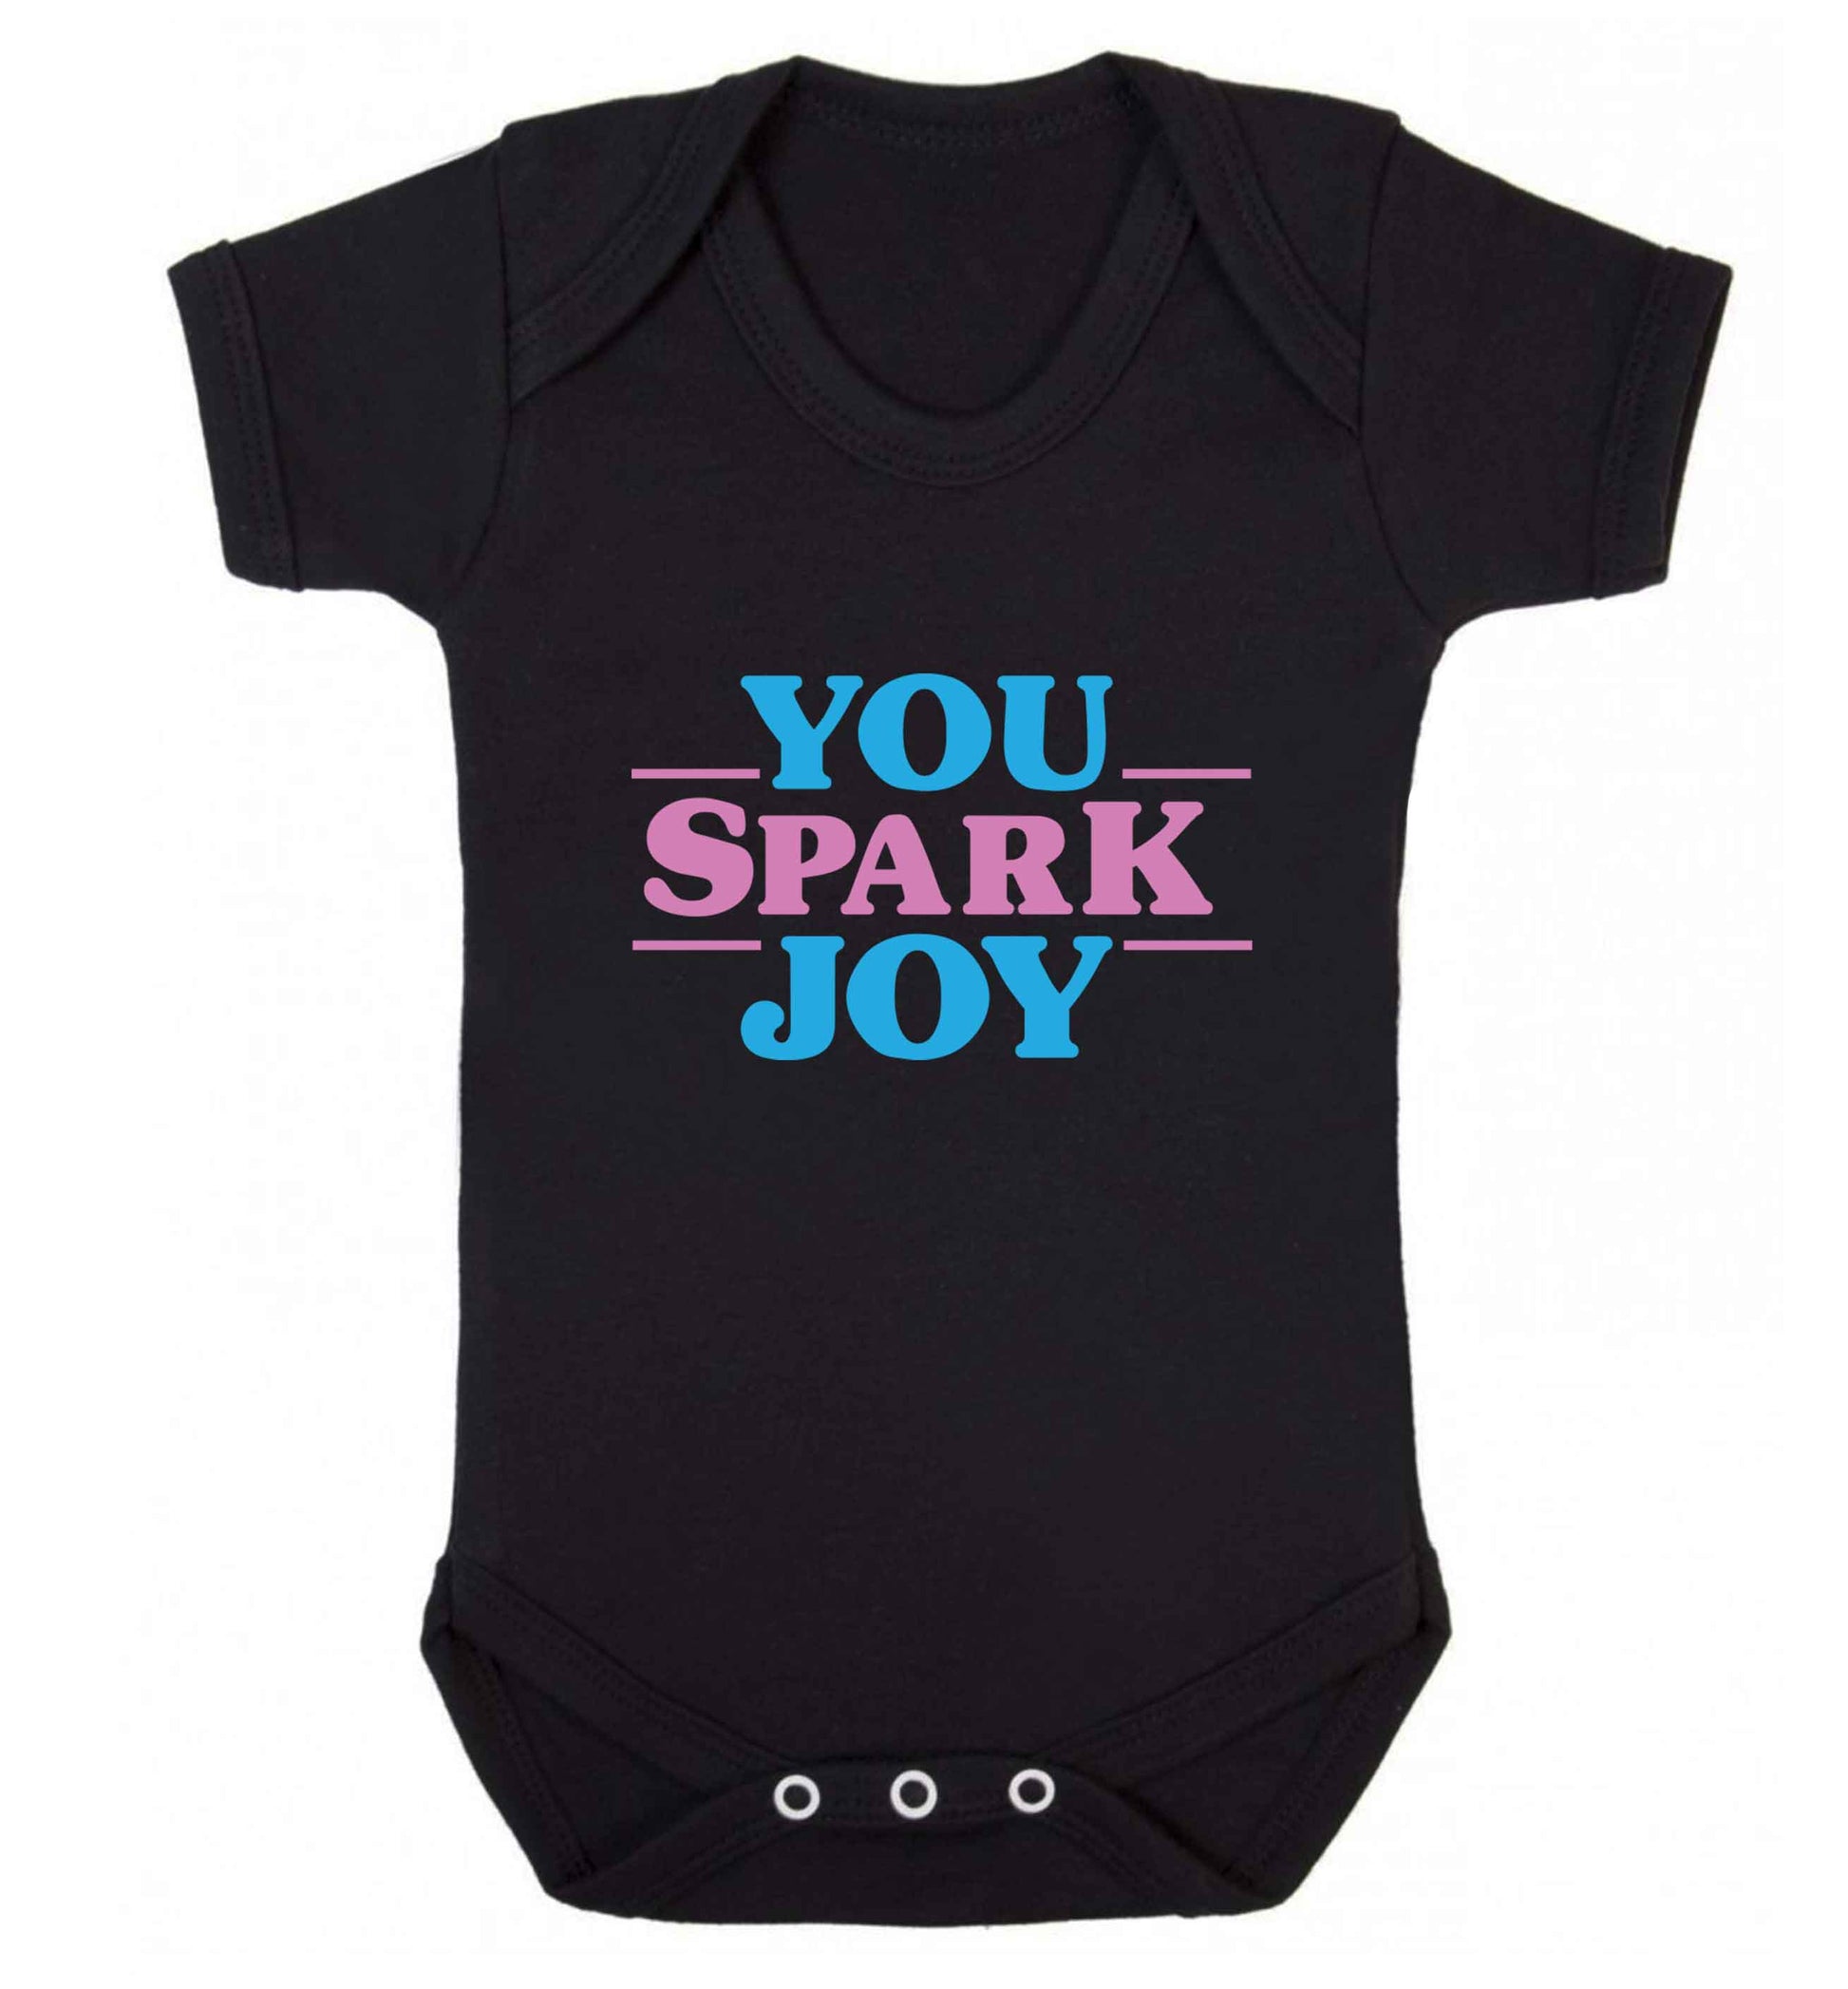 You spark joy baby vest black 18-24 months